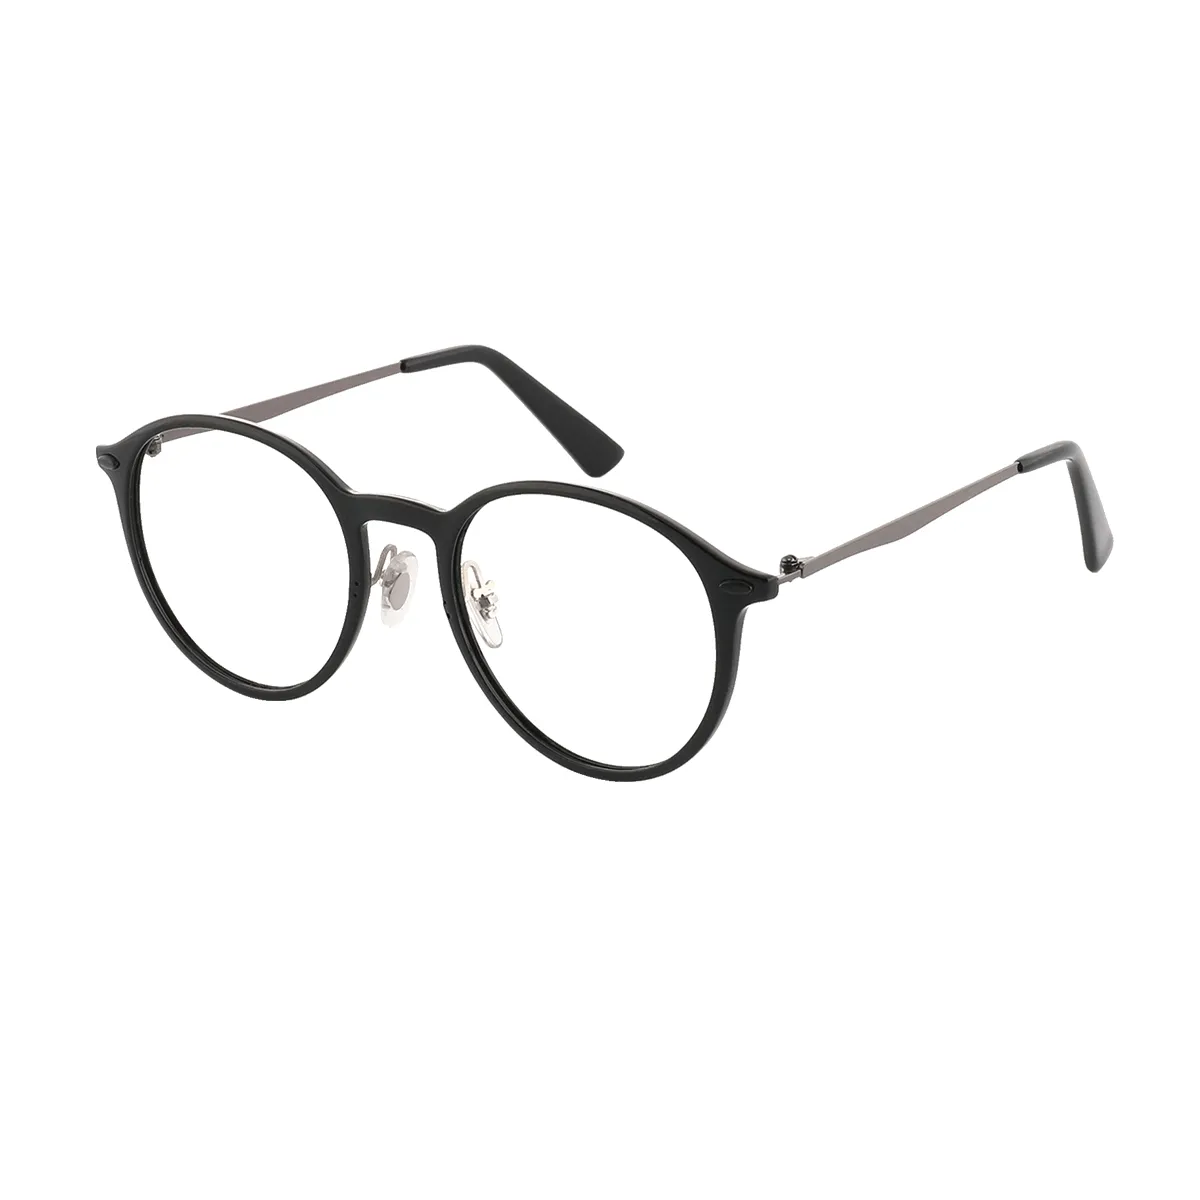 Hamm - Oval Black-Silver Glasses for Men & Women